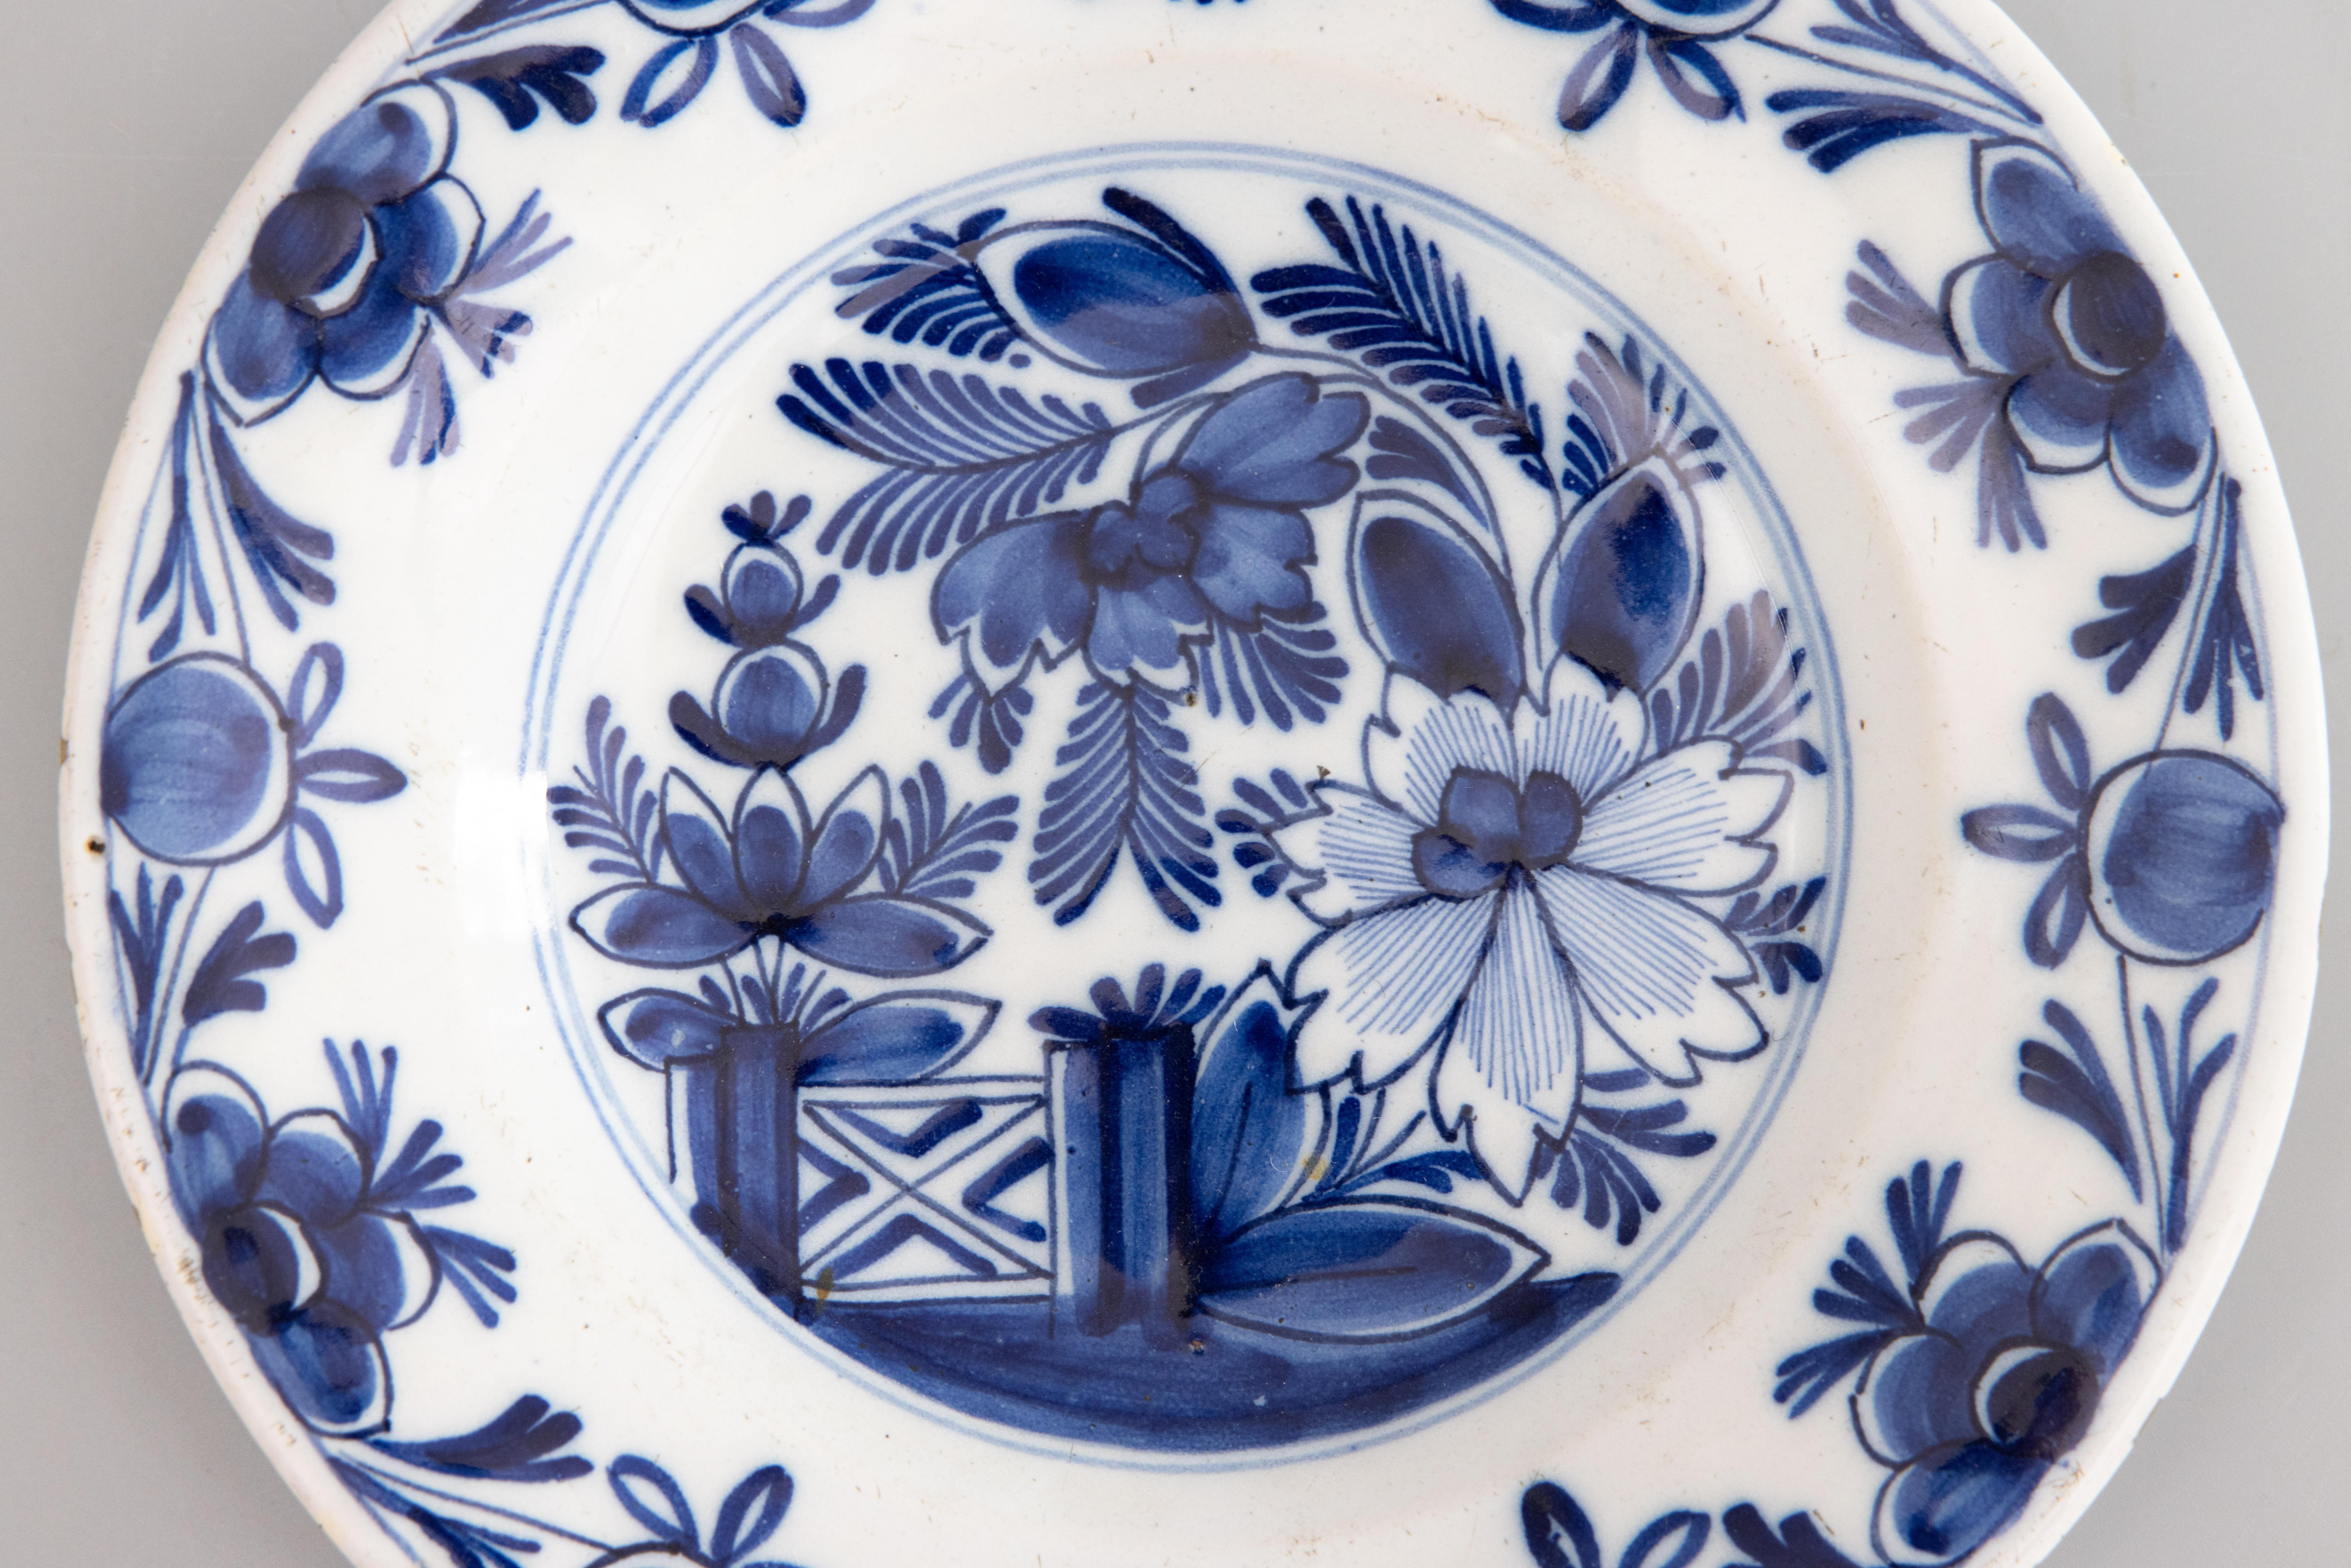 Magnifique assiette ancienne de Delft présentant au centre un motif floral saisissant et une porte de jardin, entourée d'un motif floral sur la bordure. Tous les objets sont peints à la main dans un bleu cobalt vibrant.

DIMENSIONS
9.25ʺW × 1.38ʺD ×